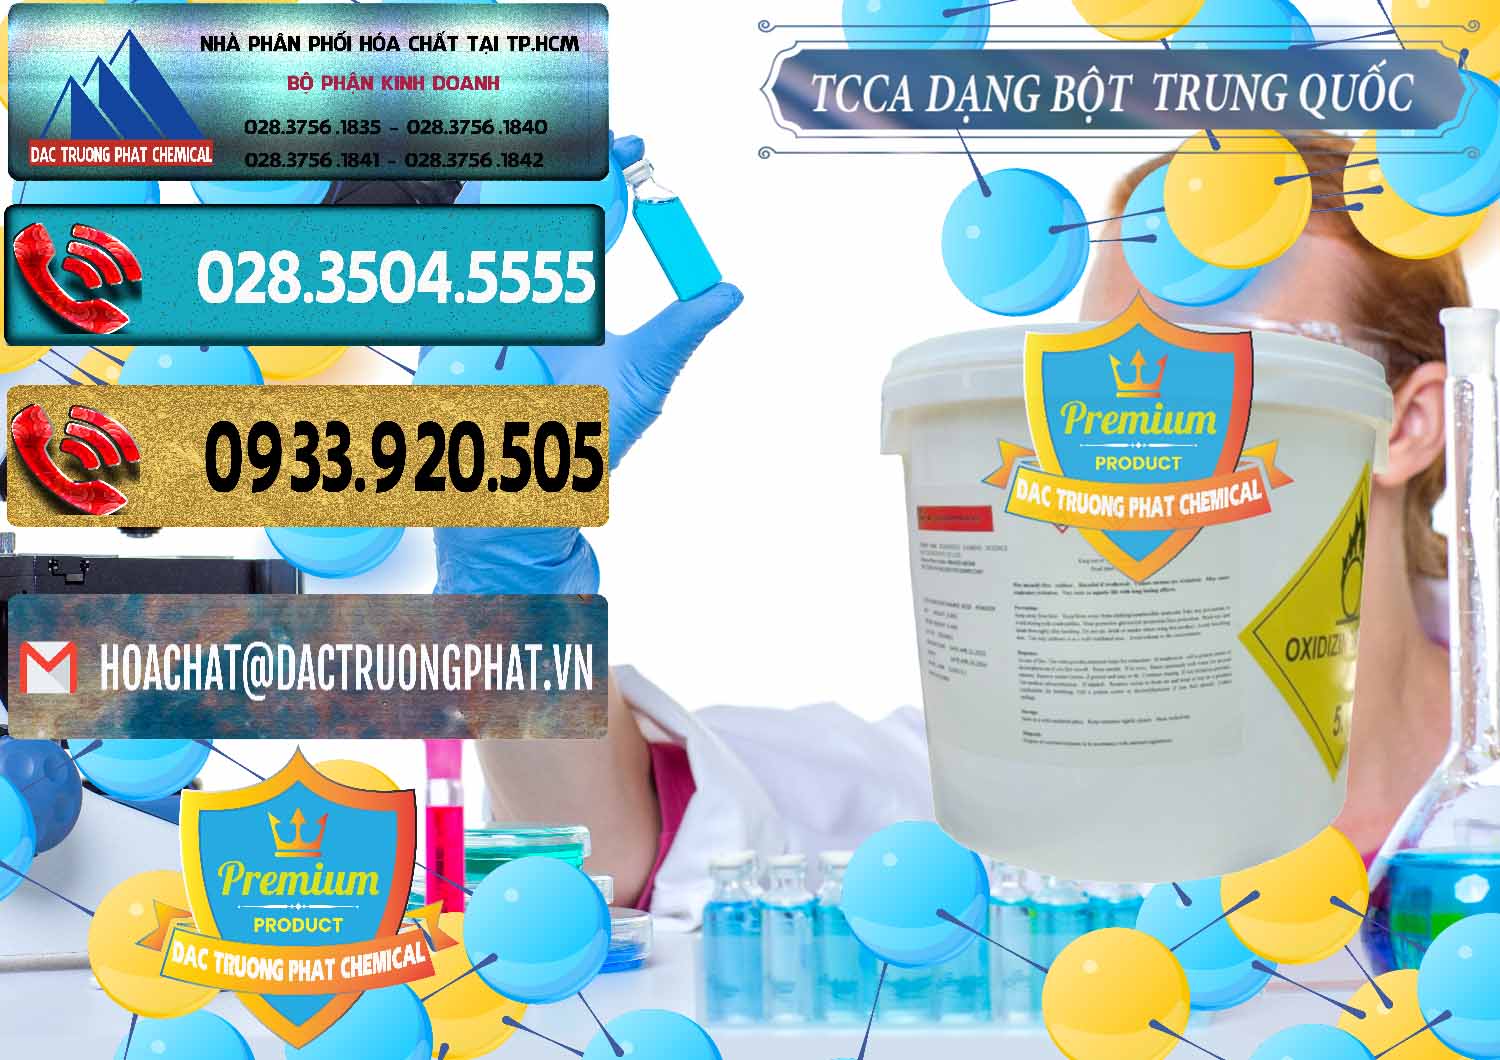 Chuyên cung cấp ( bán ) TCCA - Acid Trichloroisocyanuric Dạng Bột Thùng 5kg Trung Quốc China - 0378 - Công ty chuyên nhập khẩu và cung cấp hóa chất tại TP.HCM - hoachatdetnhuom.com